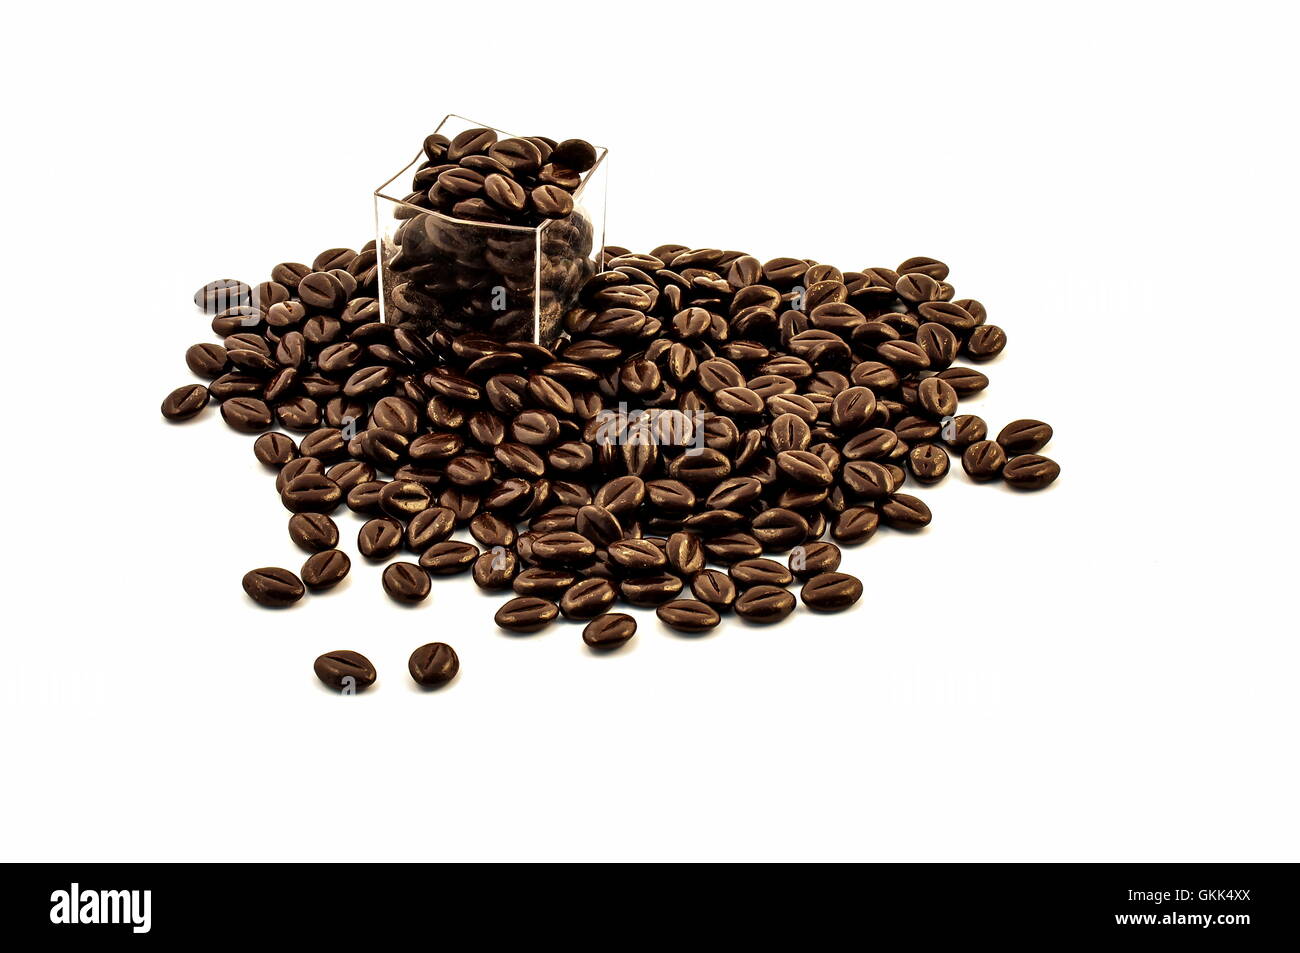 Les grains de café au chocolat Banque D'Images